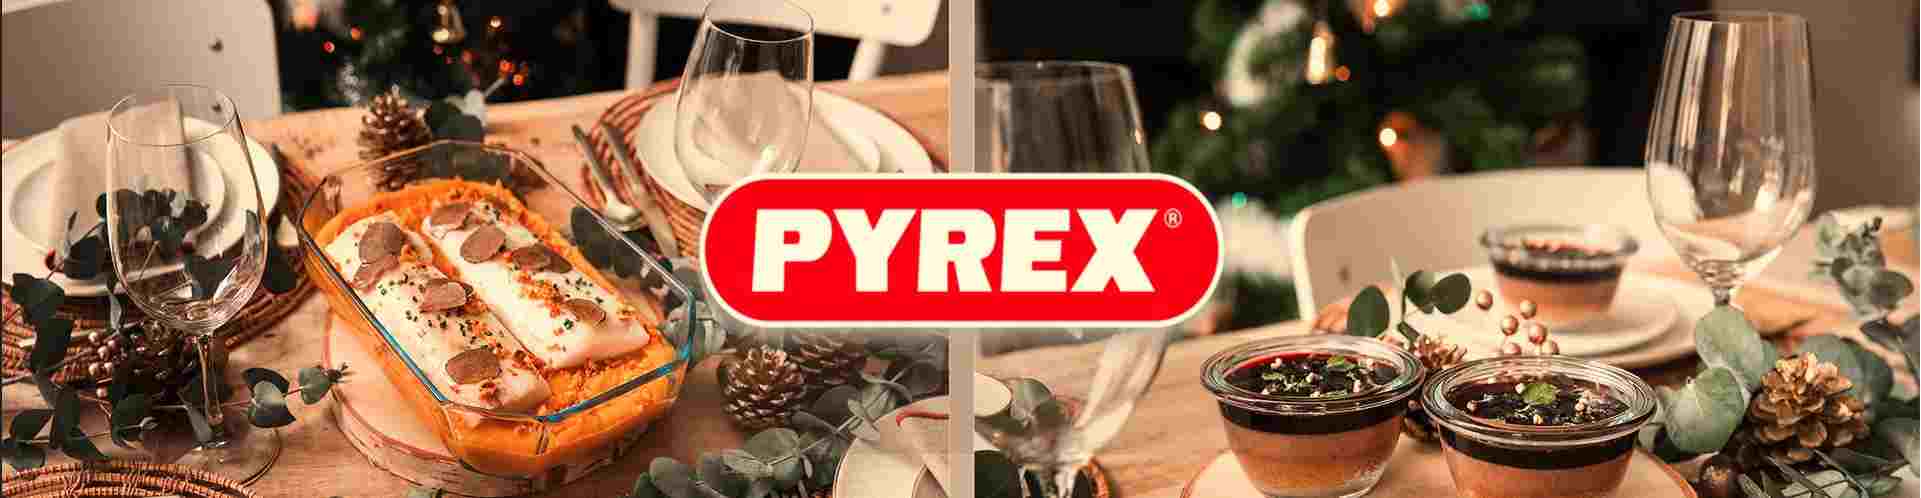 Sărbători în familie cu Pyrex!